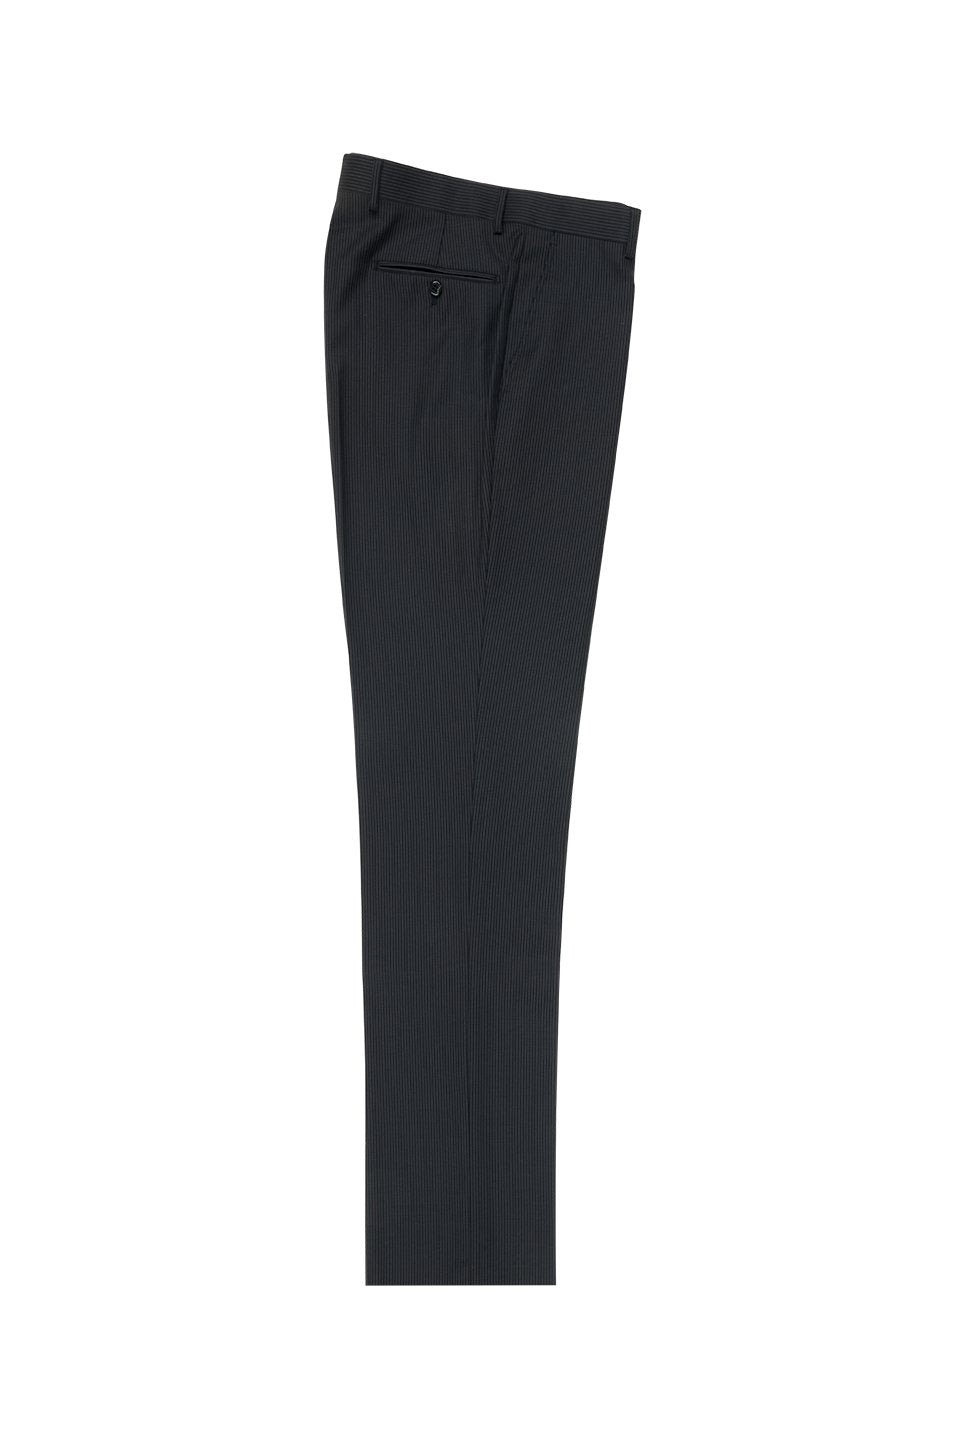 Tiglio Tiglio Black Mini-Stripe Flat Front Dress Pants